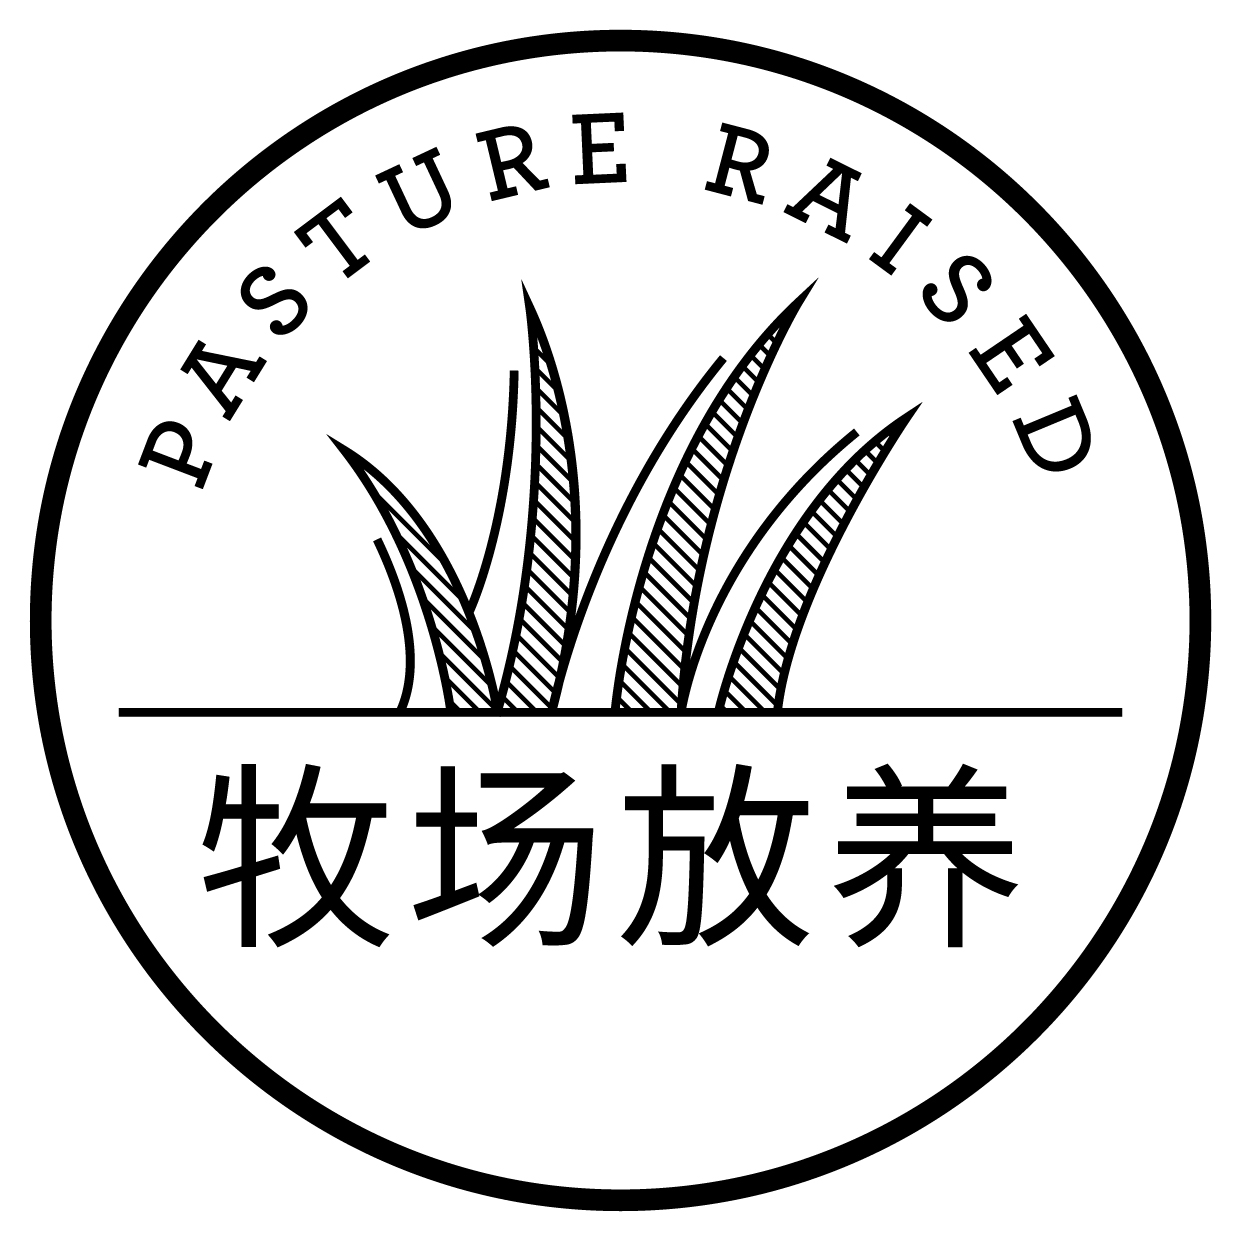 pasture raised logo